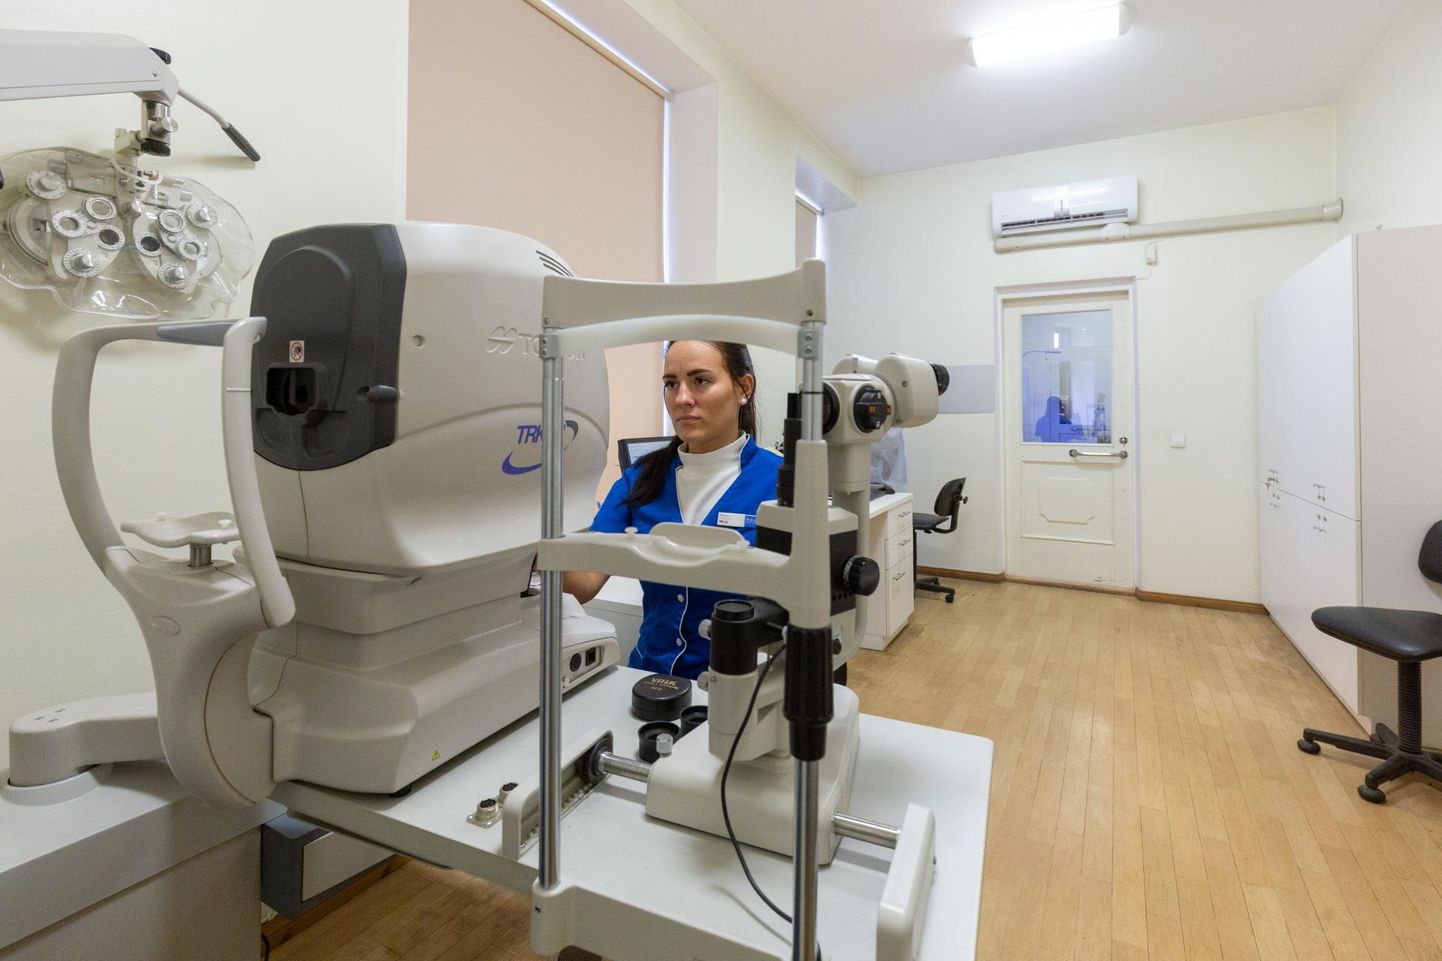 Pro Optika ruumis, kus praegu võtavad patsiente vastu kordamööda arstid ja optometristid, ei pruugi edaspidi arstid tööd jätkata. Pildil on optometrist Marta Särk.